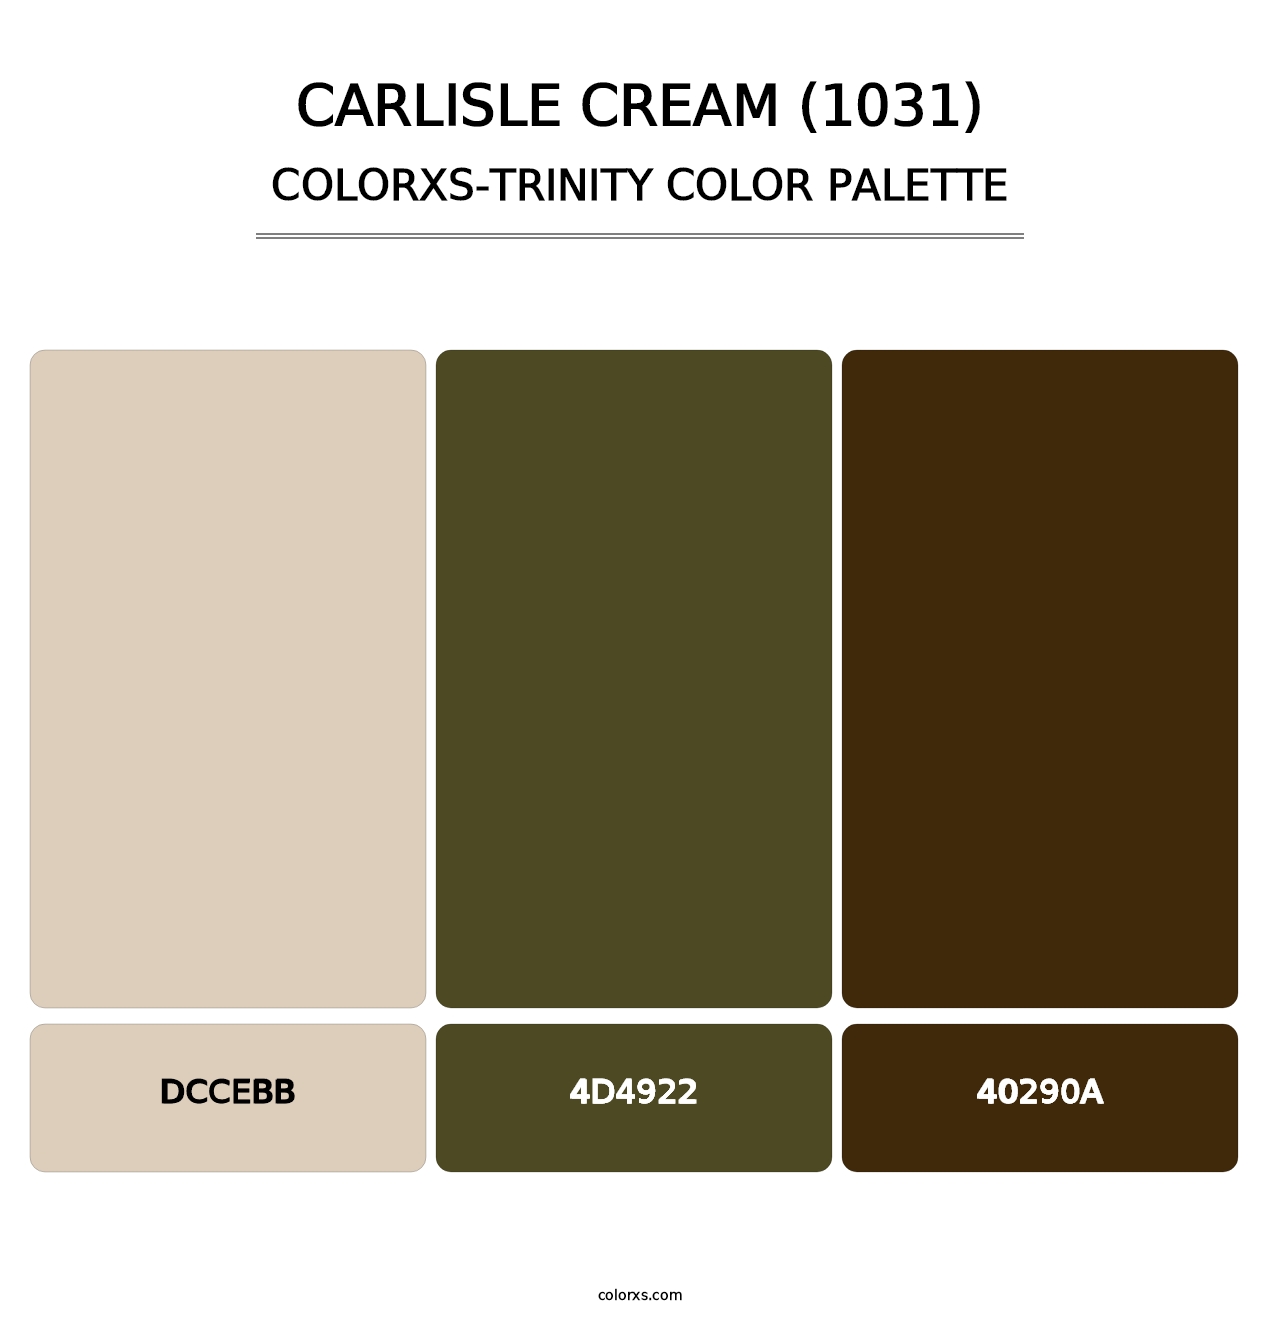 Carlisle Cream (1031) - Colorxs Trinity Palette